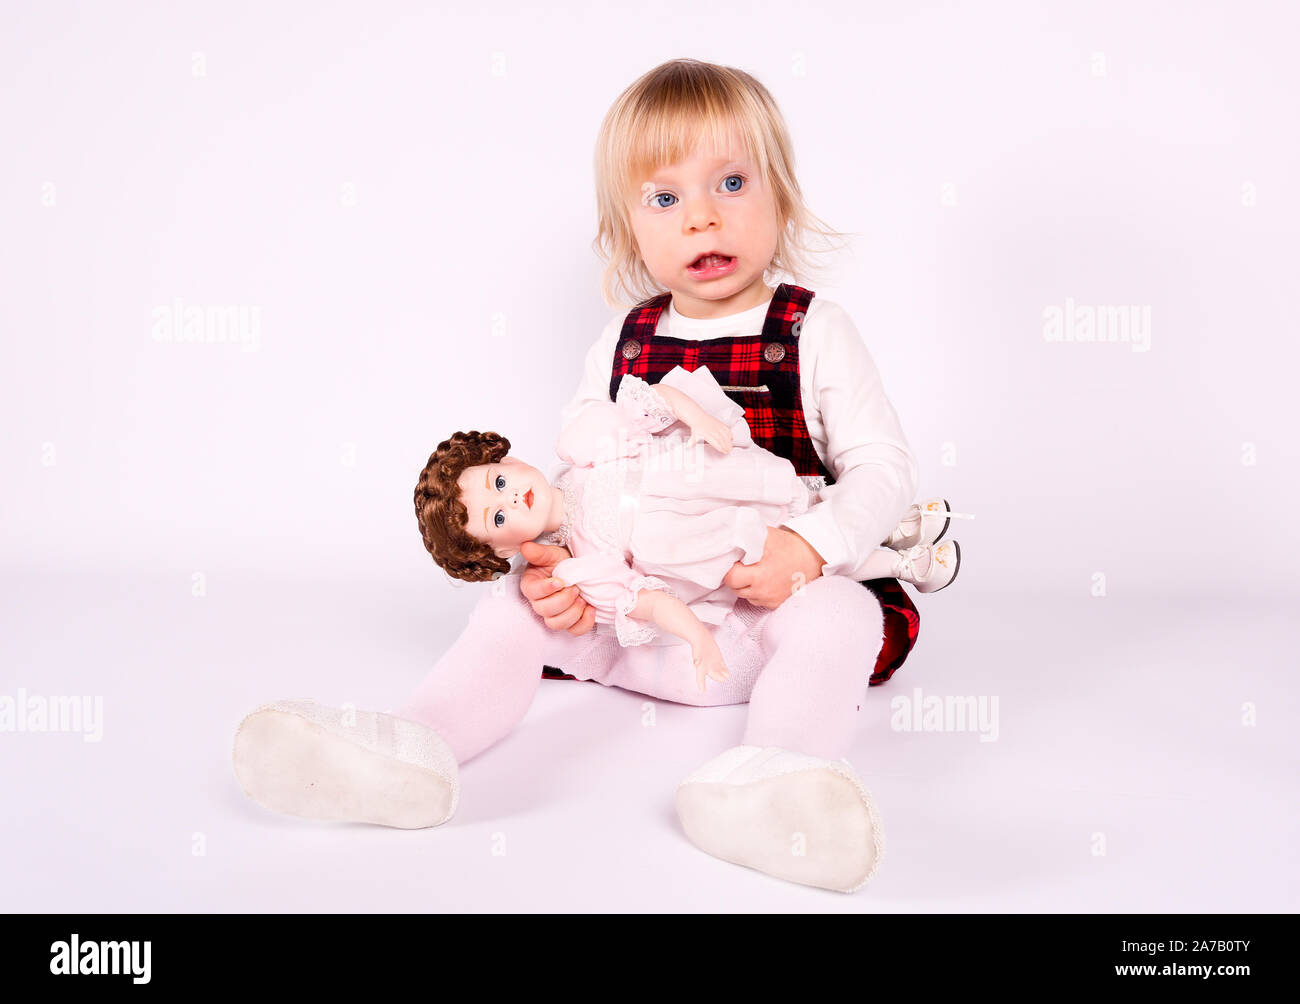 Petite blonde bébé fille avec de grands yeux bleus en robe rouge jouer avec l'ancienne poupée. Assis sur le plancher, fond blanc. Portrait isolé Banque D'Images